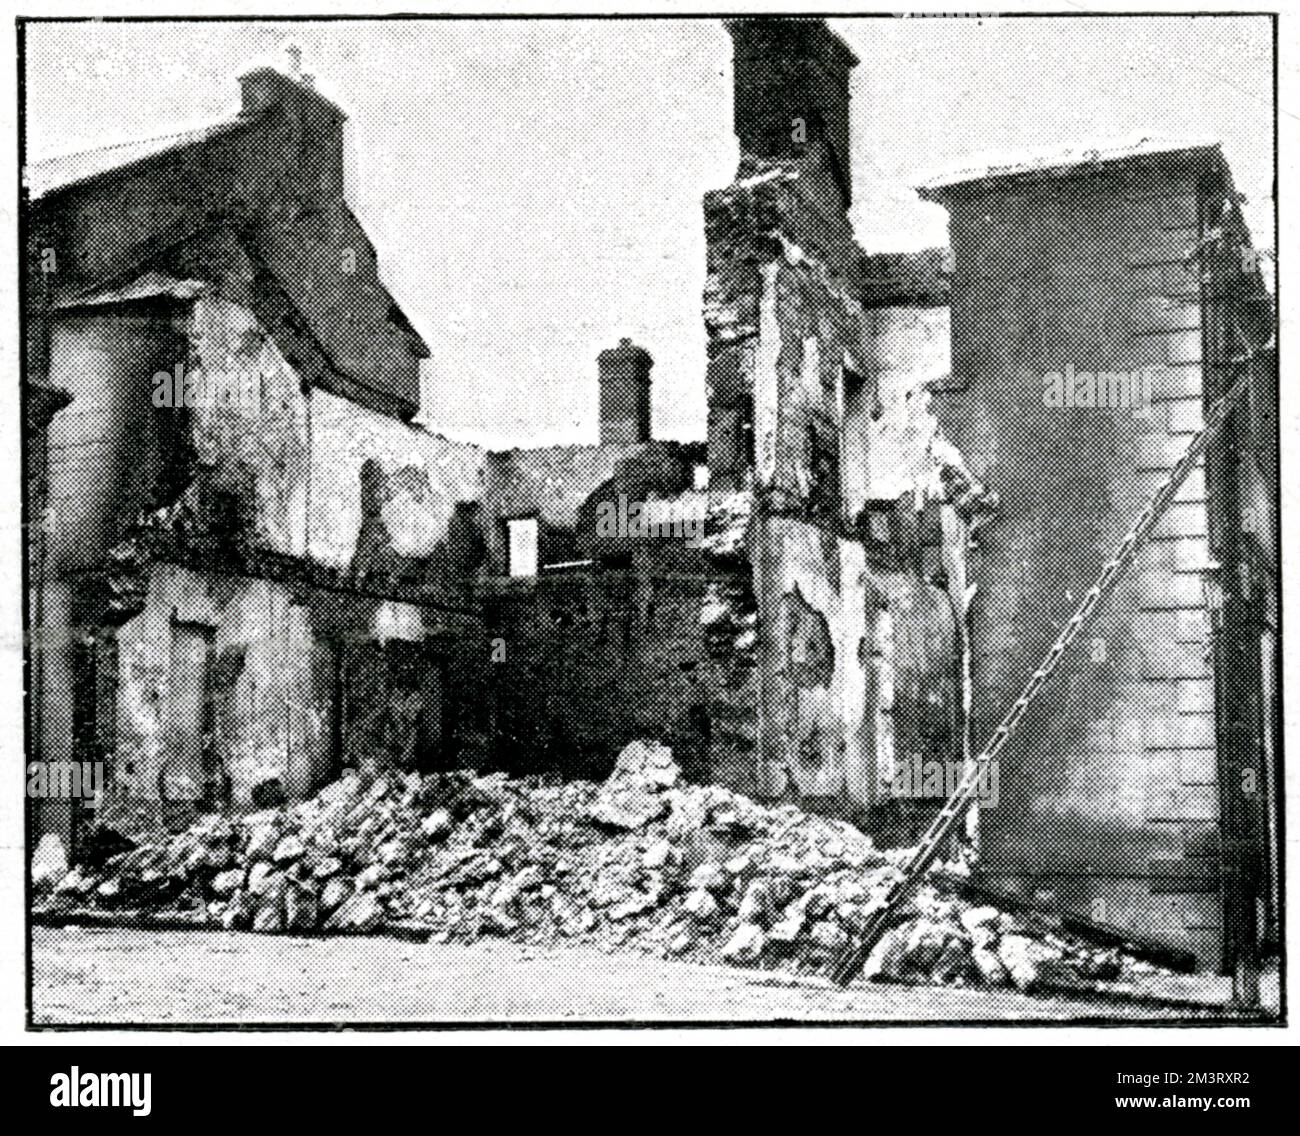 Des bâtiments ont été détruits dans le village de Tuam à Galway à la suite de représailles après la mort de deux agents de police pendant la guerre d'indépendance, en juillet 1920. Date: 1921 Banque D'Images